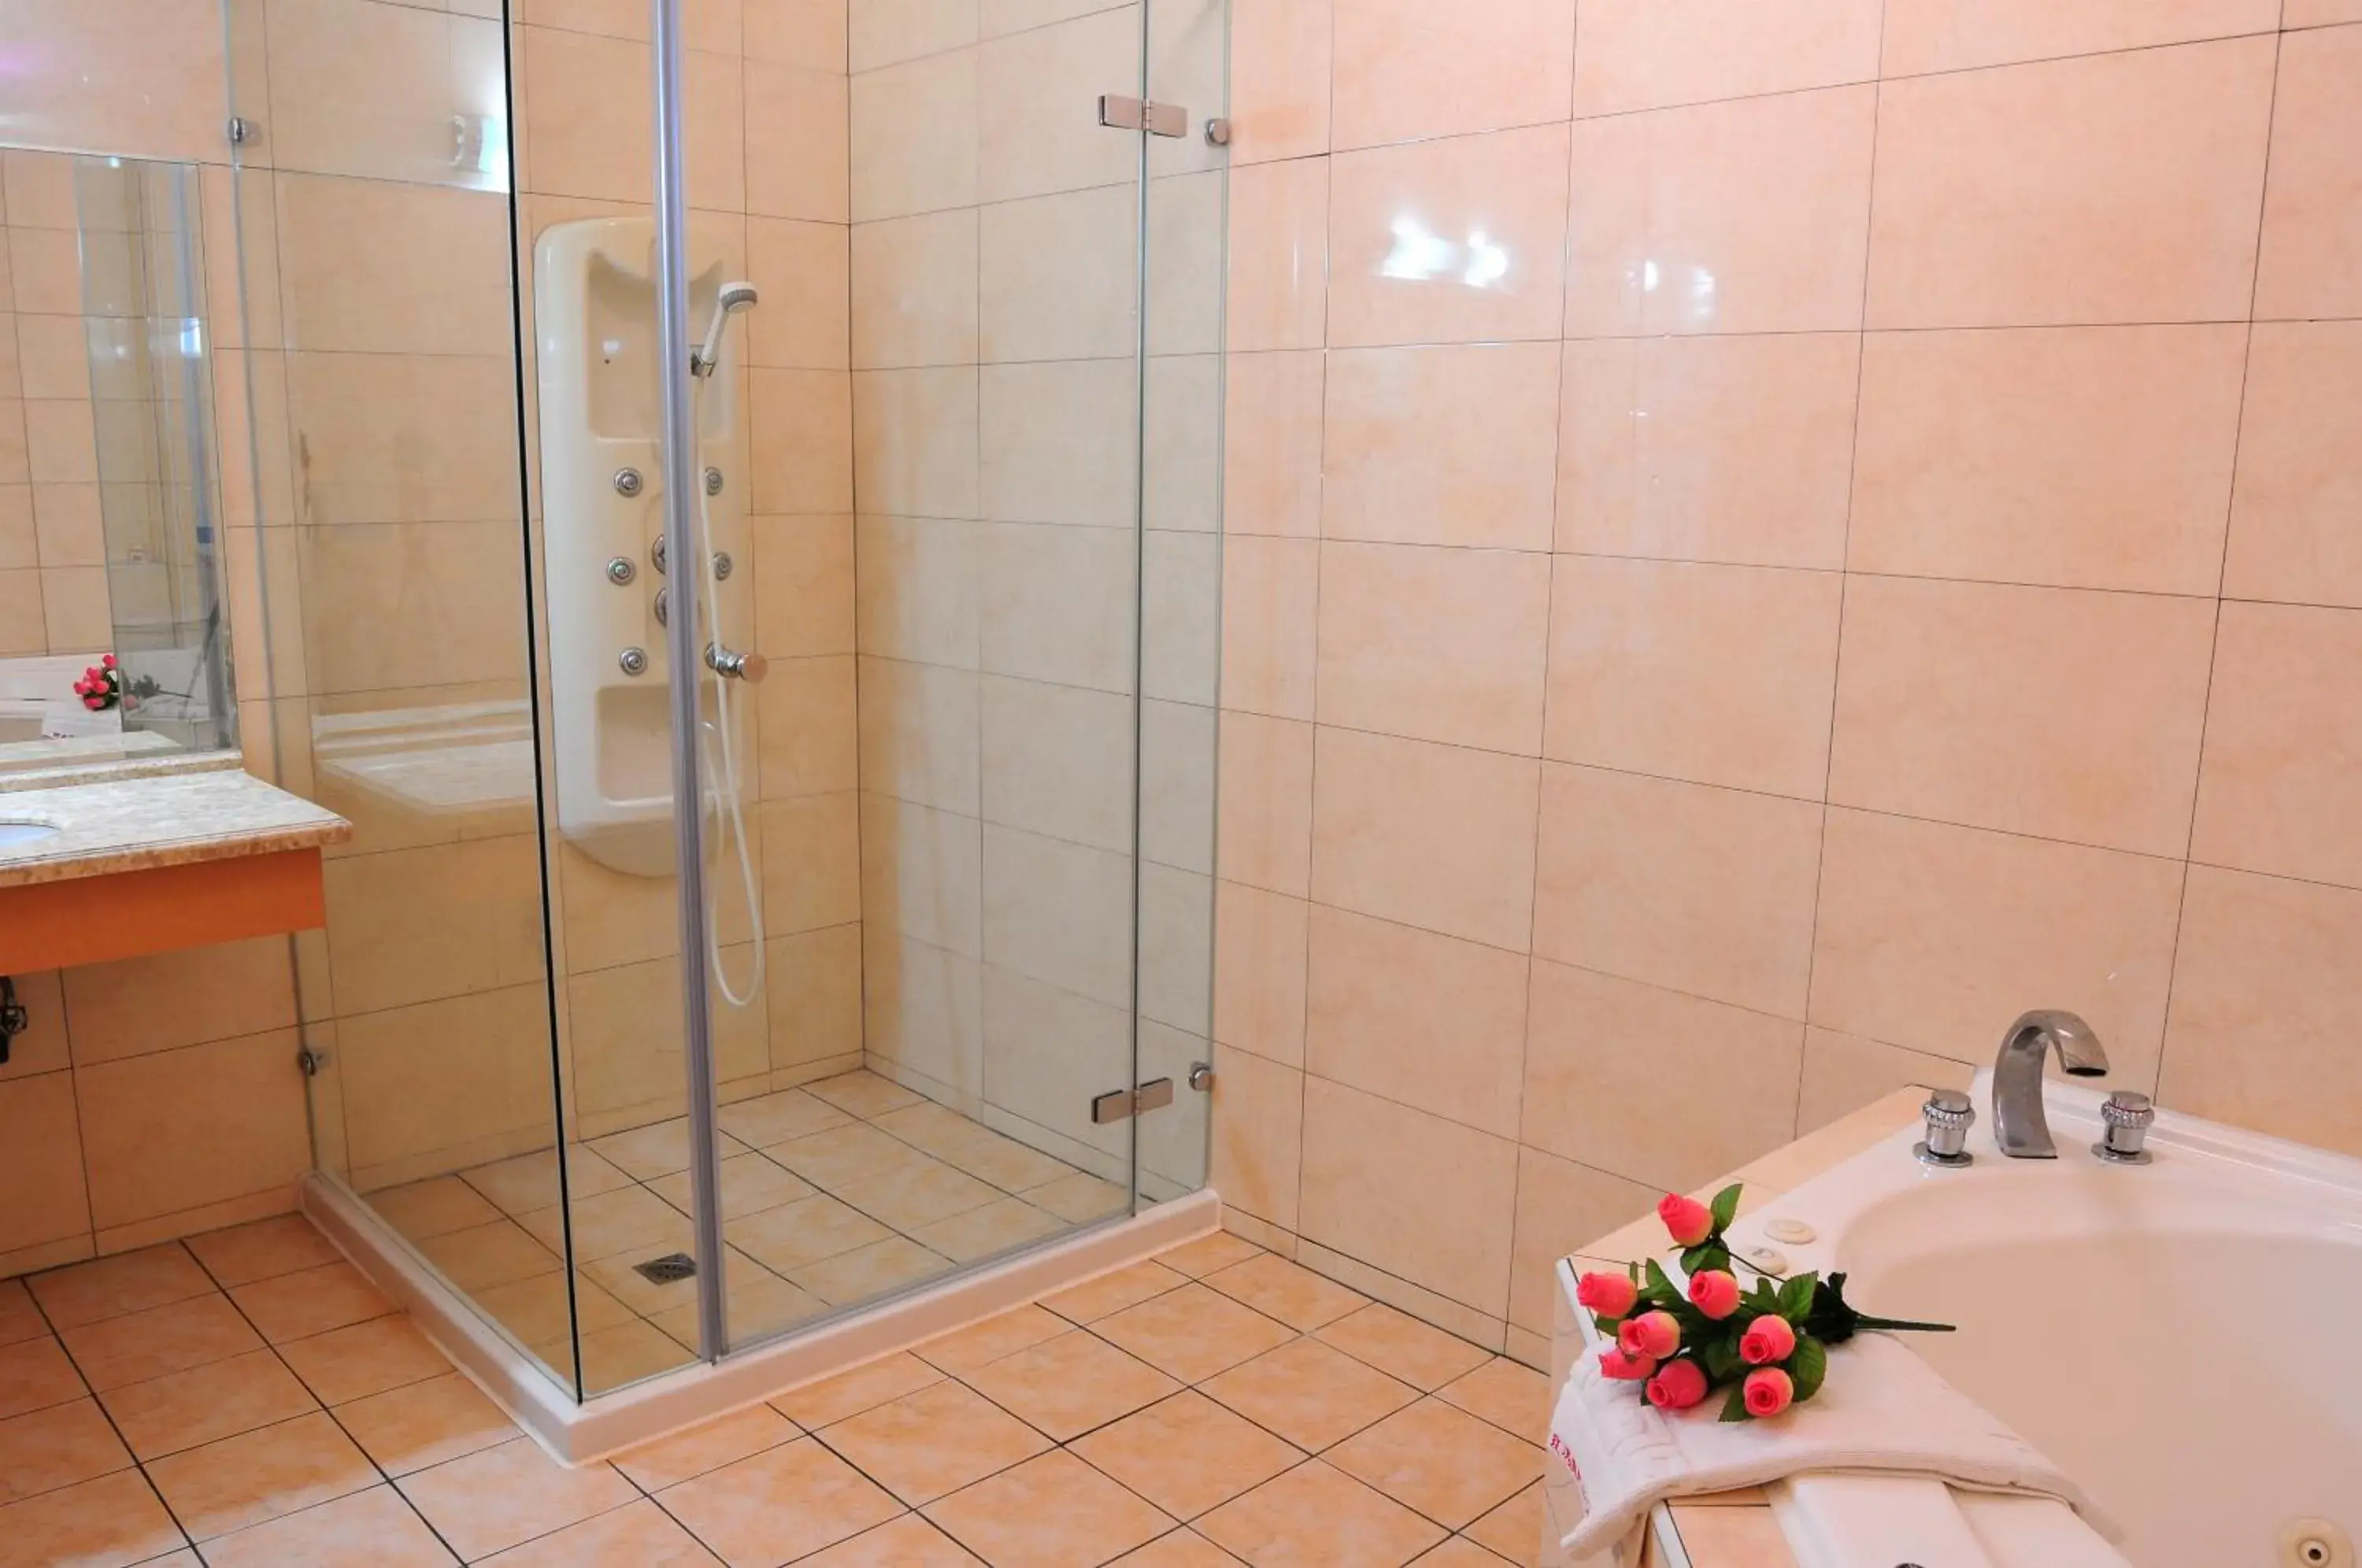 Shower, Bathroom in wogo hotel